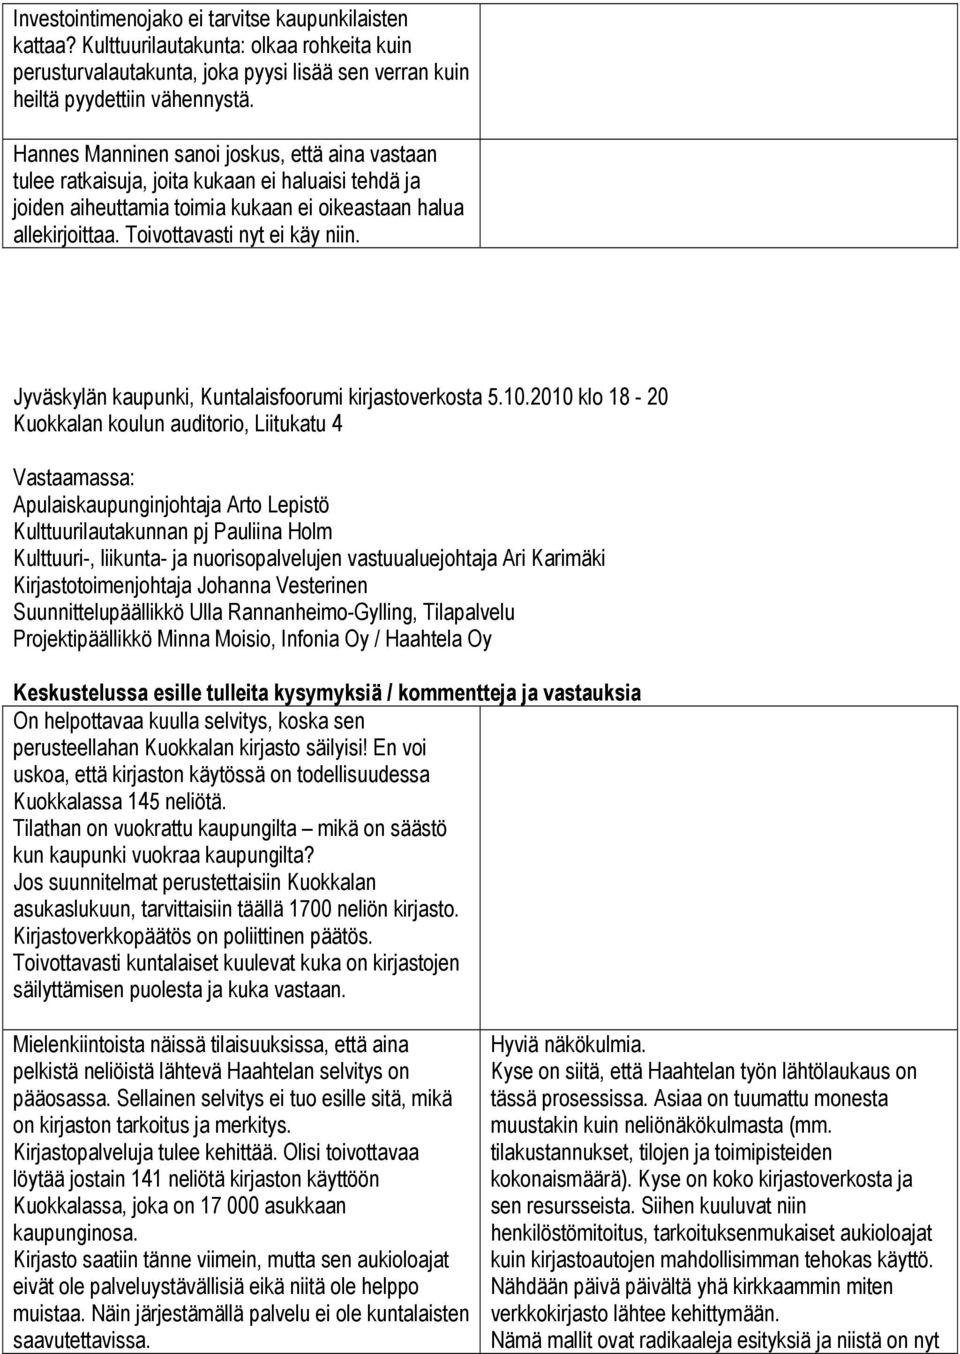 Jyväskylän kaupunki, Kuntalaisfoorumi kirjastoverkosta 5.10.